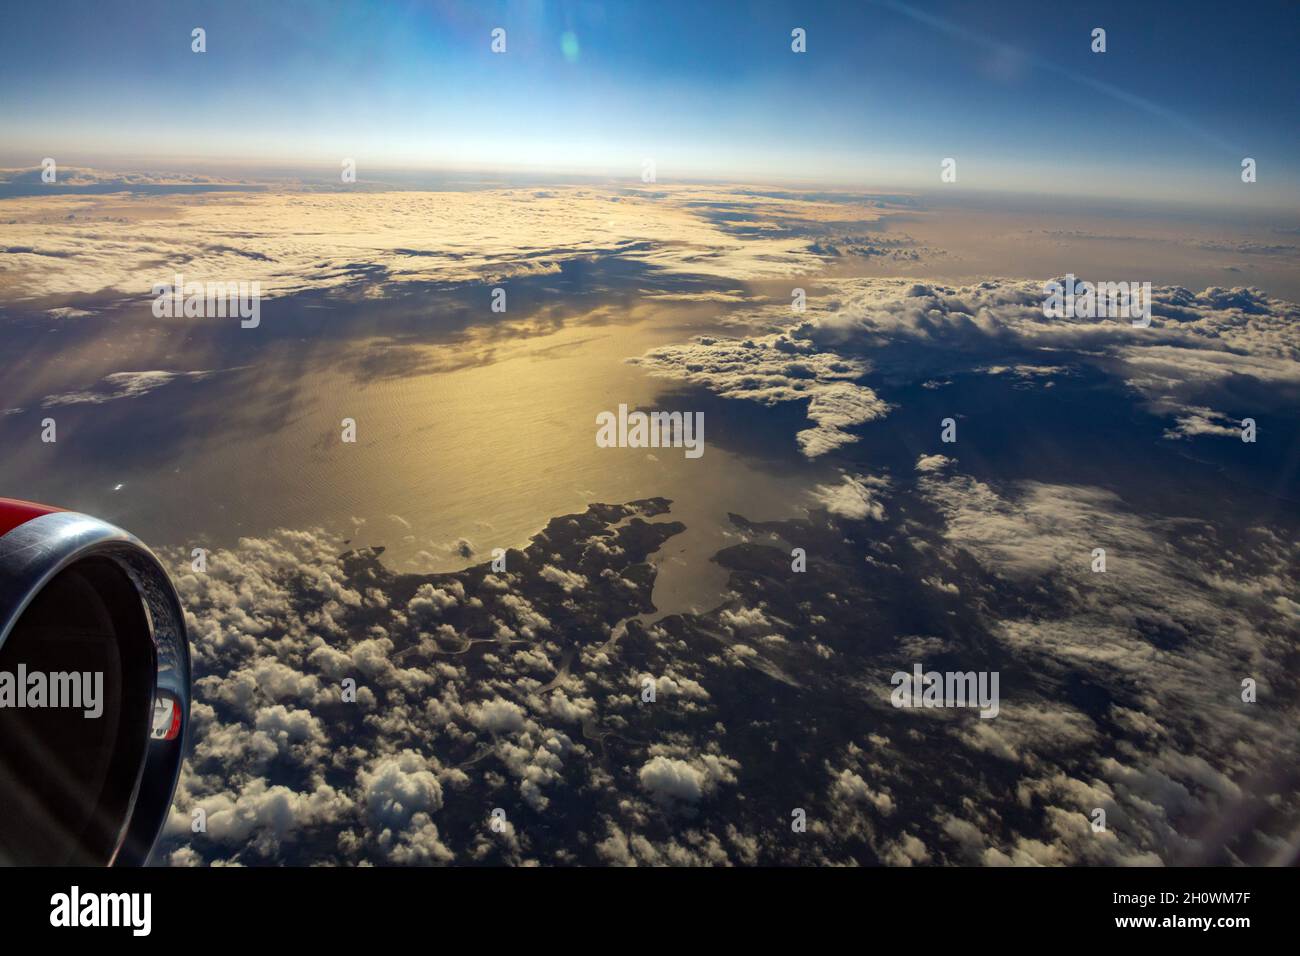 vista desde el avión de pasajeros a unos 36.000feet / 11.000 metros sobre el nivel del mar Foto de stock